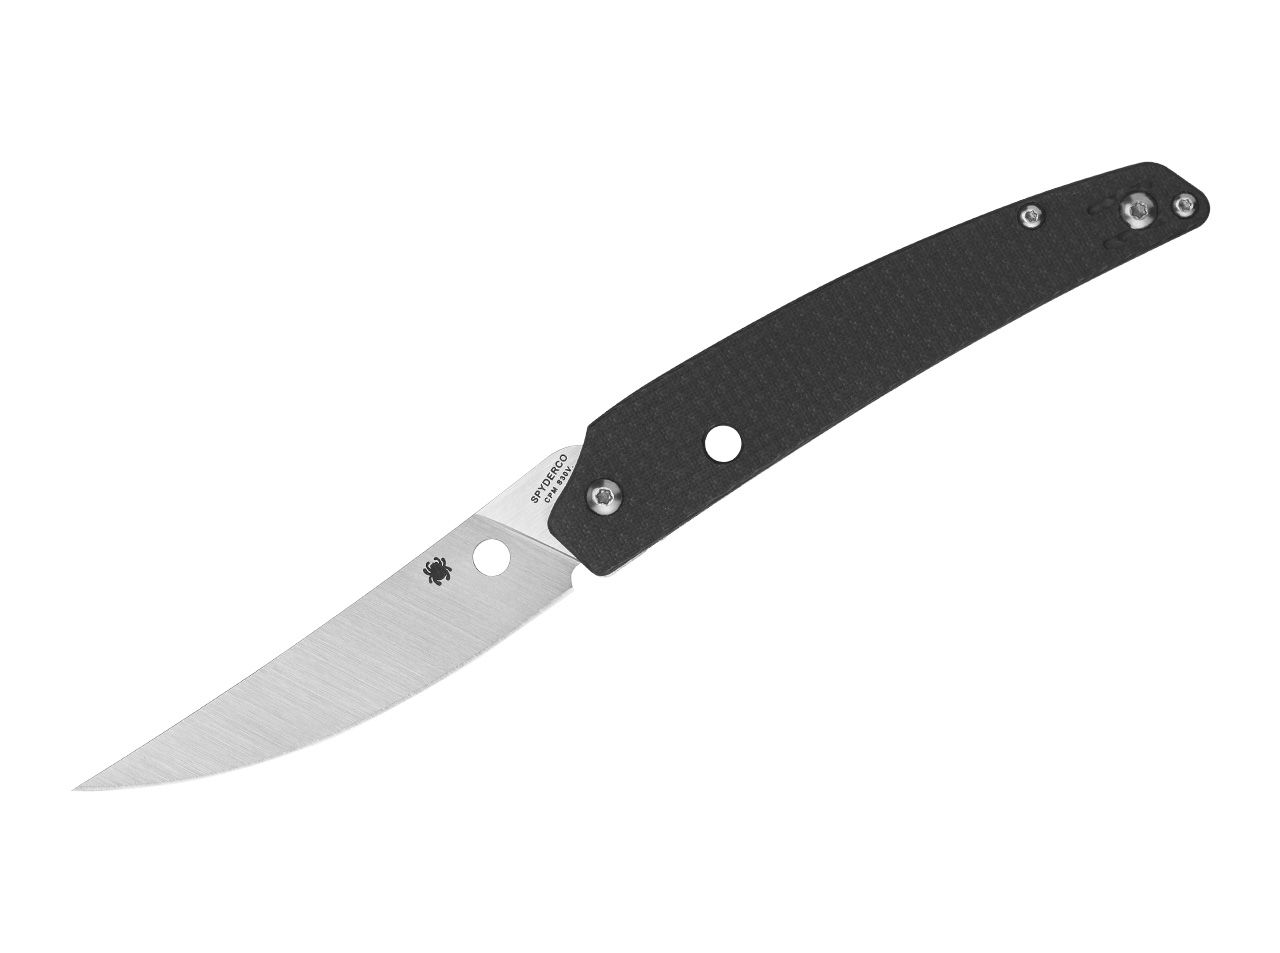 Taschenmesser Ikuchi schlankes Messer mit CPM-S-30V u. Kohlefaser/G10 von Spyderco